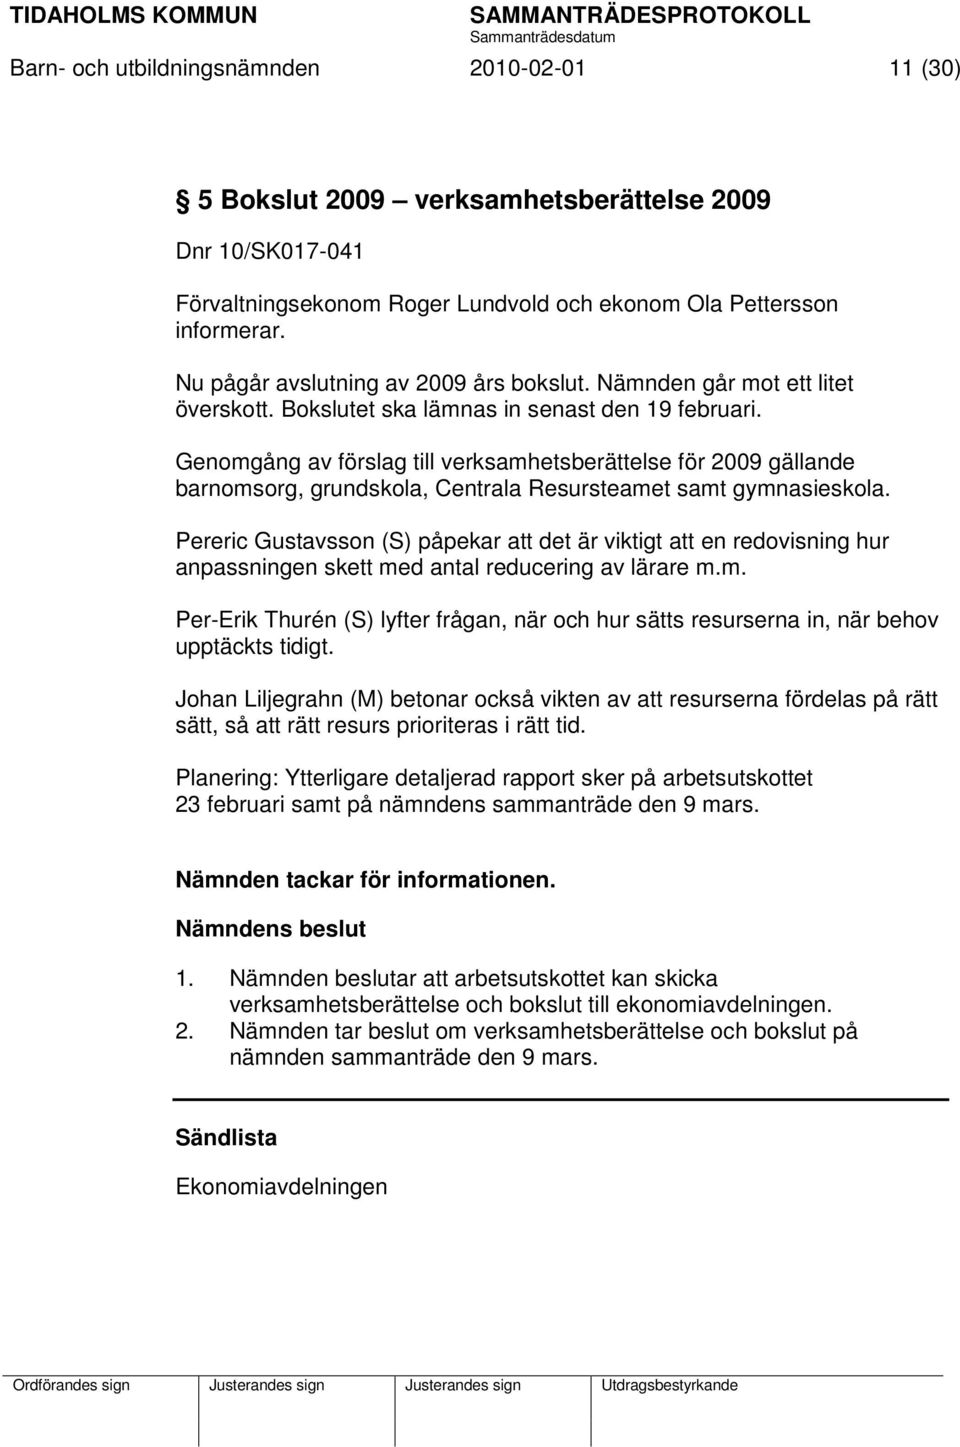 Genomgång av förslag till verksamhetsberättelse för 2009 gällande barnomsorg, grundskola, Centrala Resursteamet samt gymnasieskola.